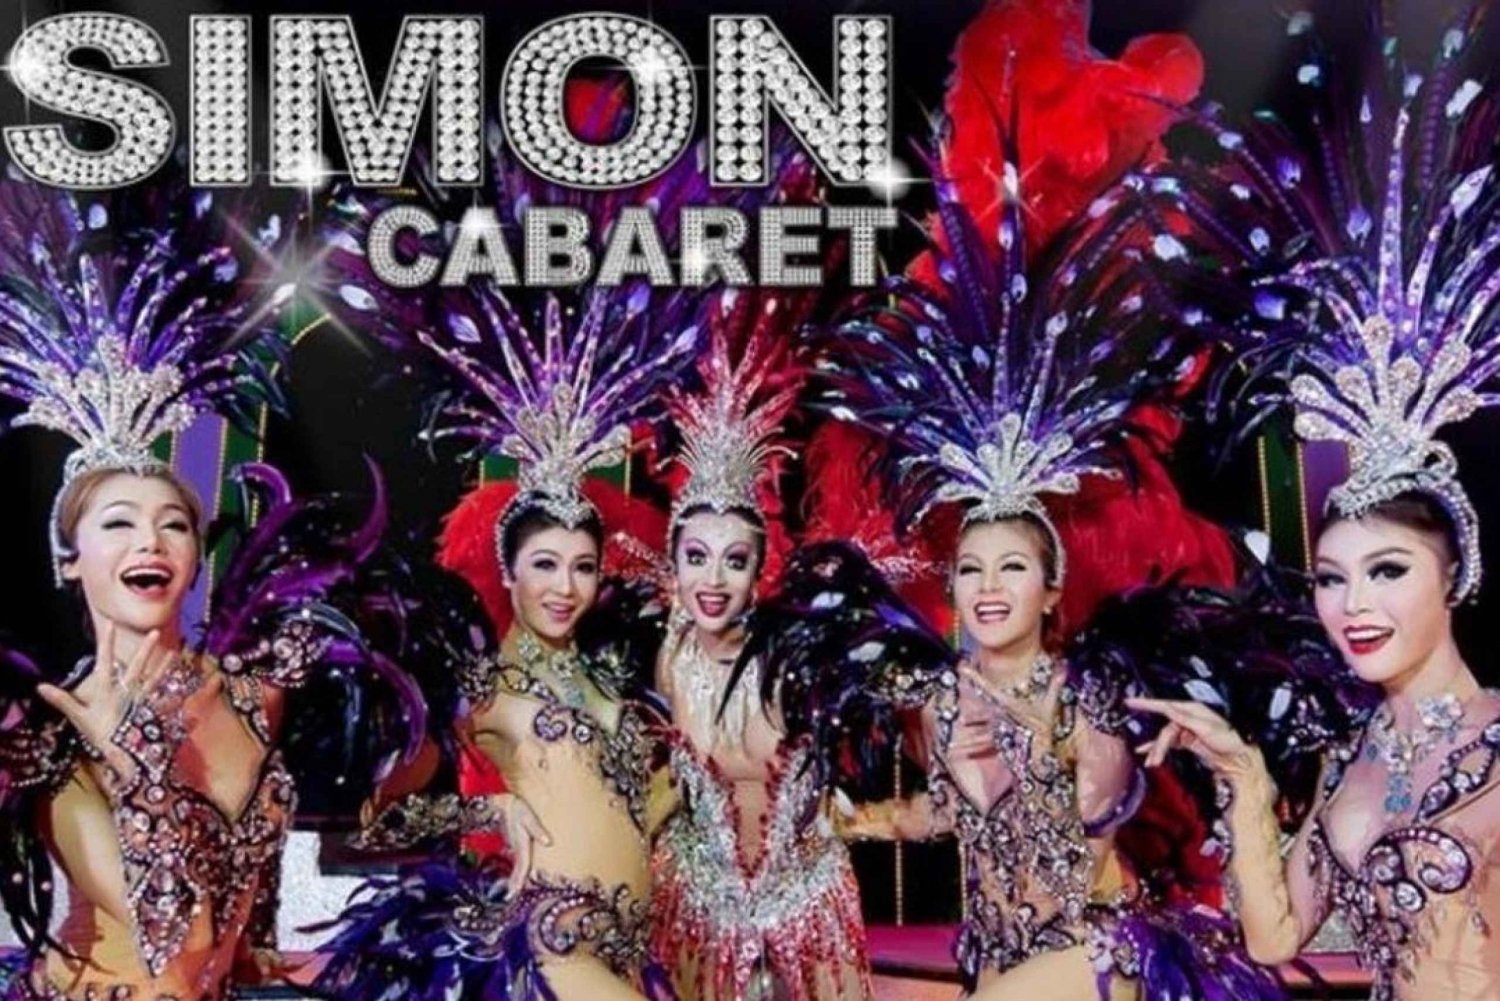 Phuket: Biglietto d'ingresso per lo spettacolo Simon Cabaret con trasporto